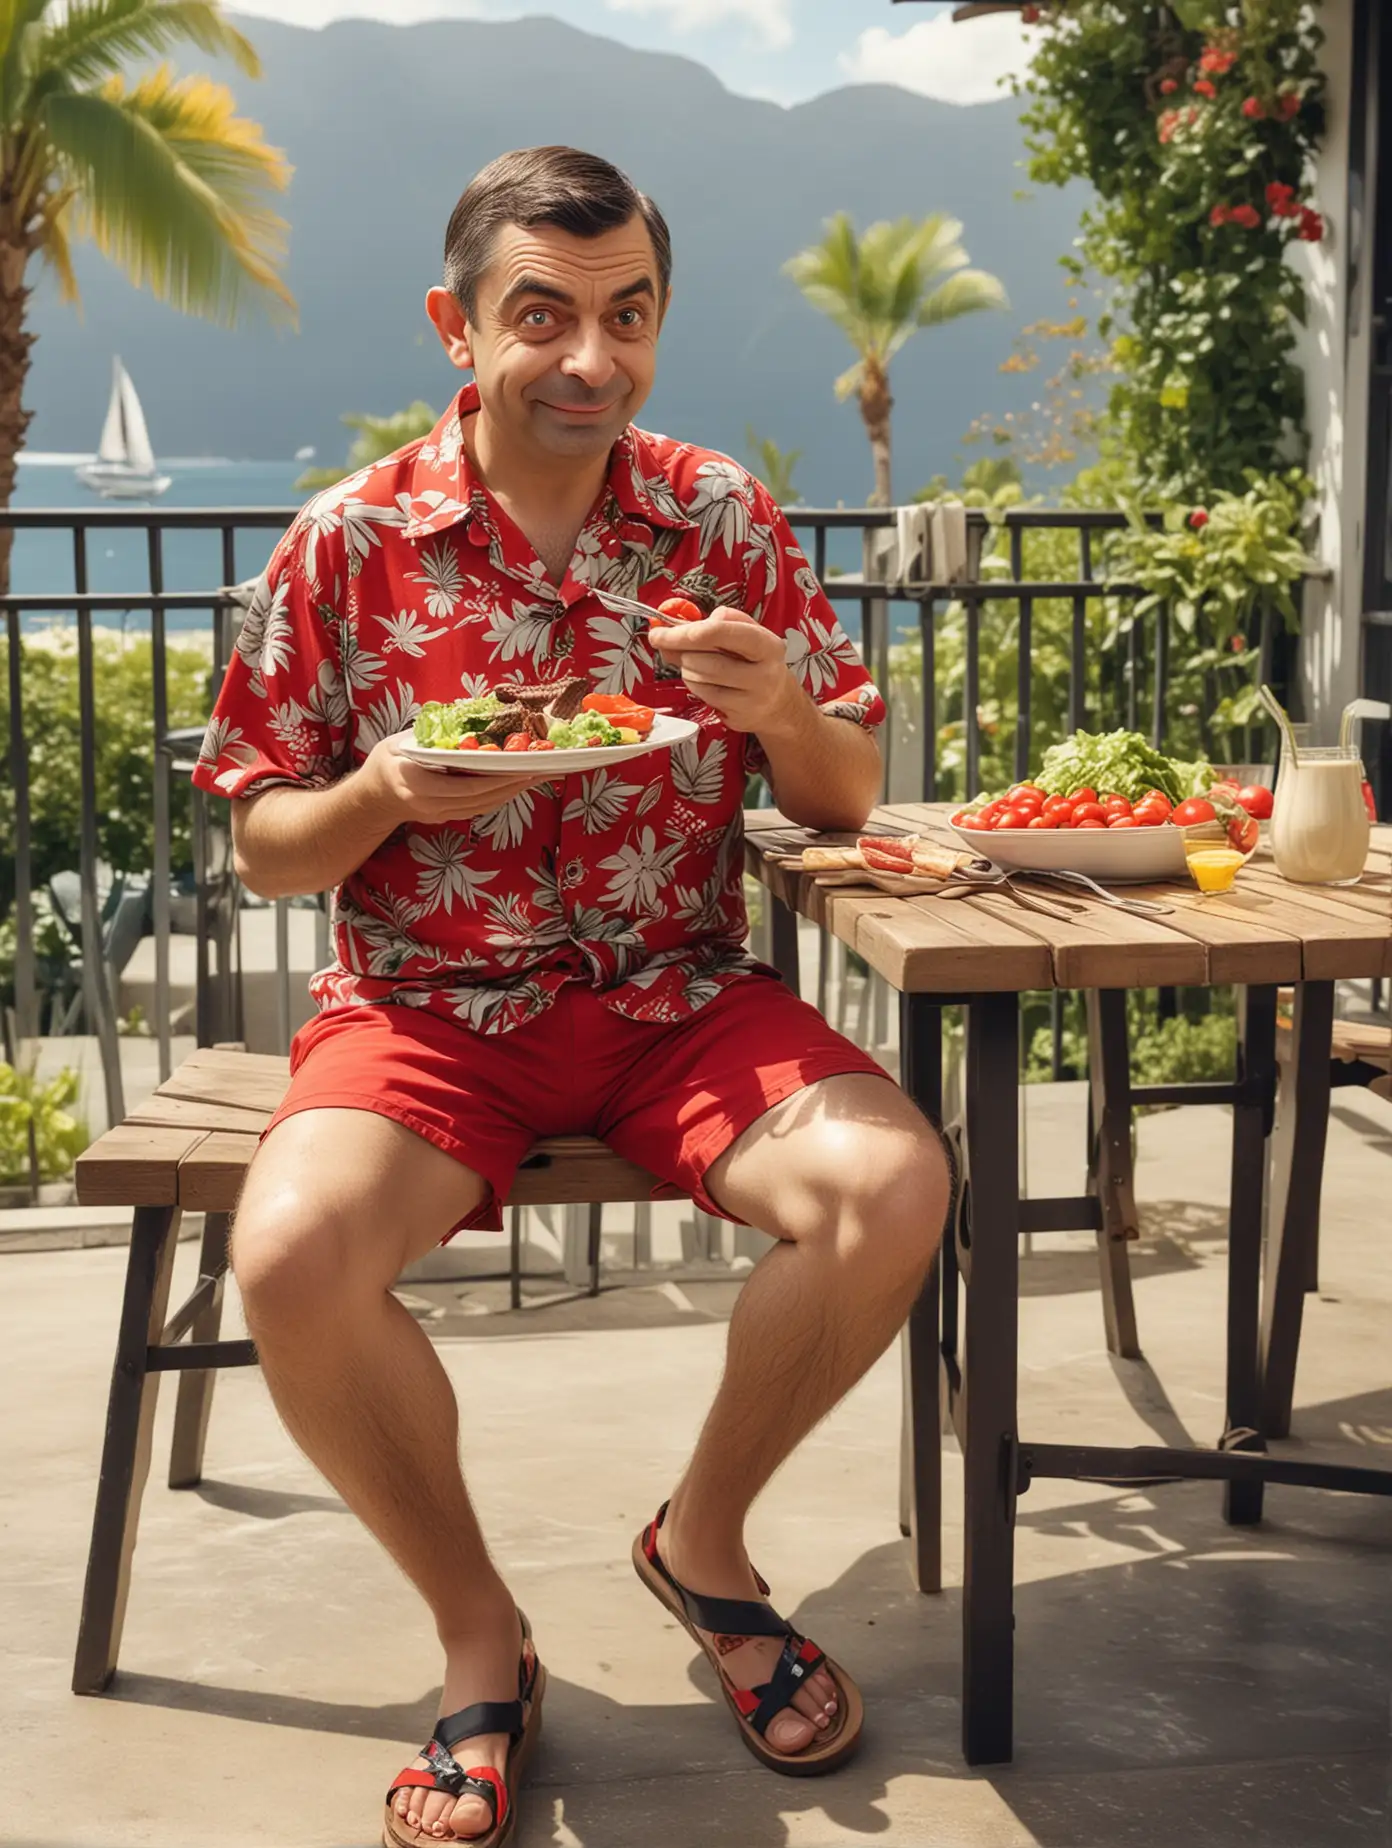 Mr bean, en chemisette hawaï, short rouge et sandalettes, il mange des cotelettes grillées et une salade, assis en terrasse, soleil, photographie, réaliste